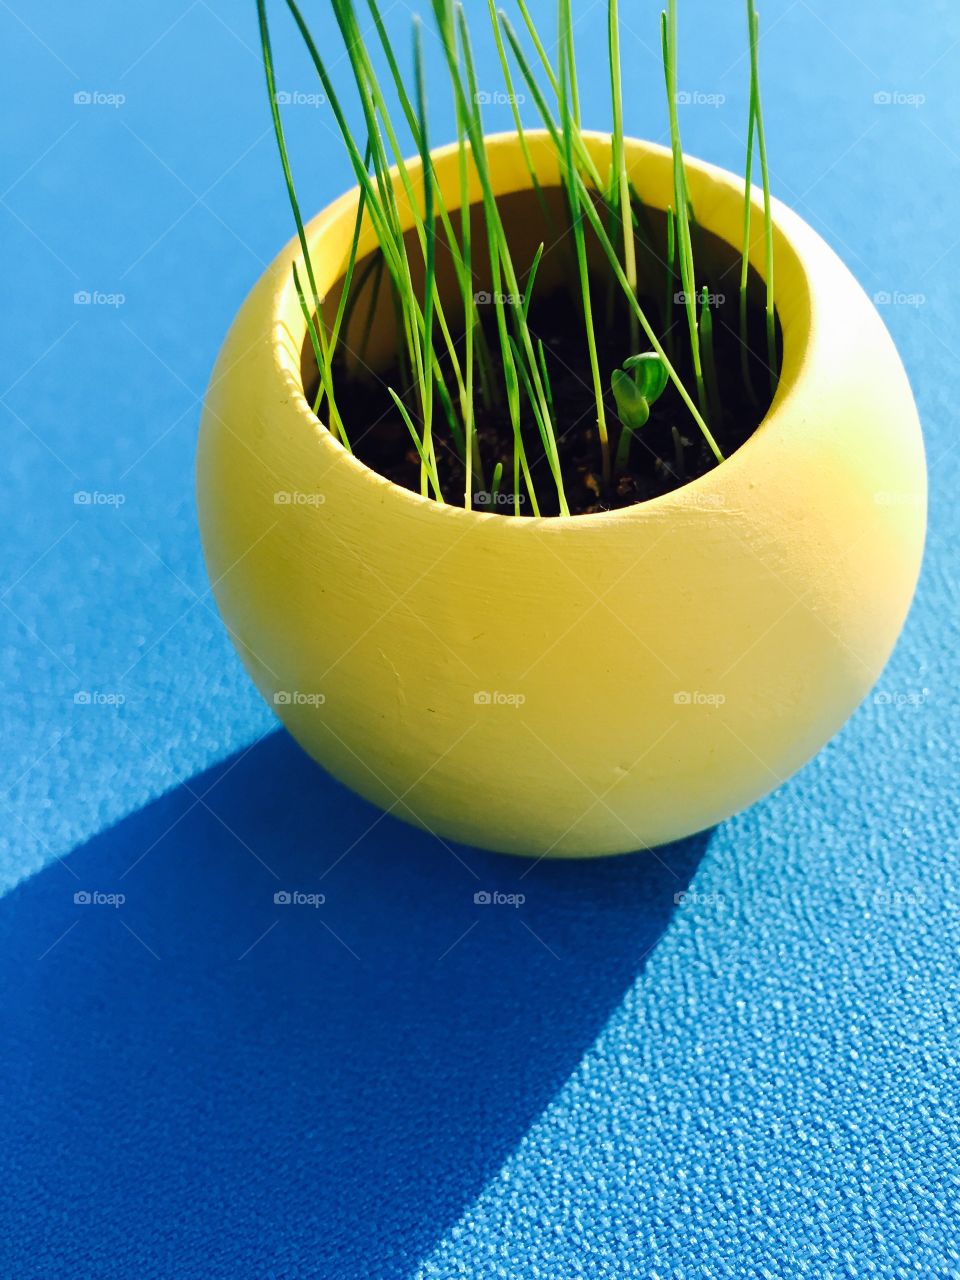 Grass in a yellow pot